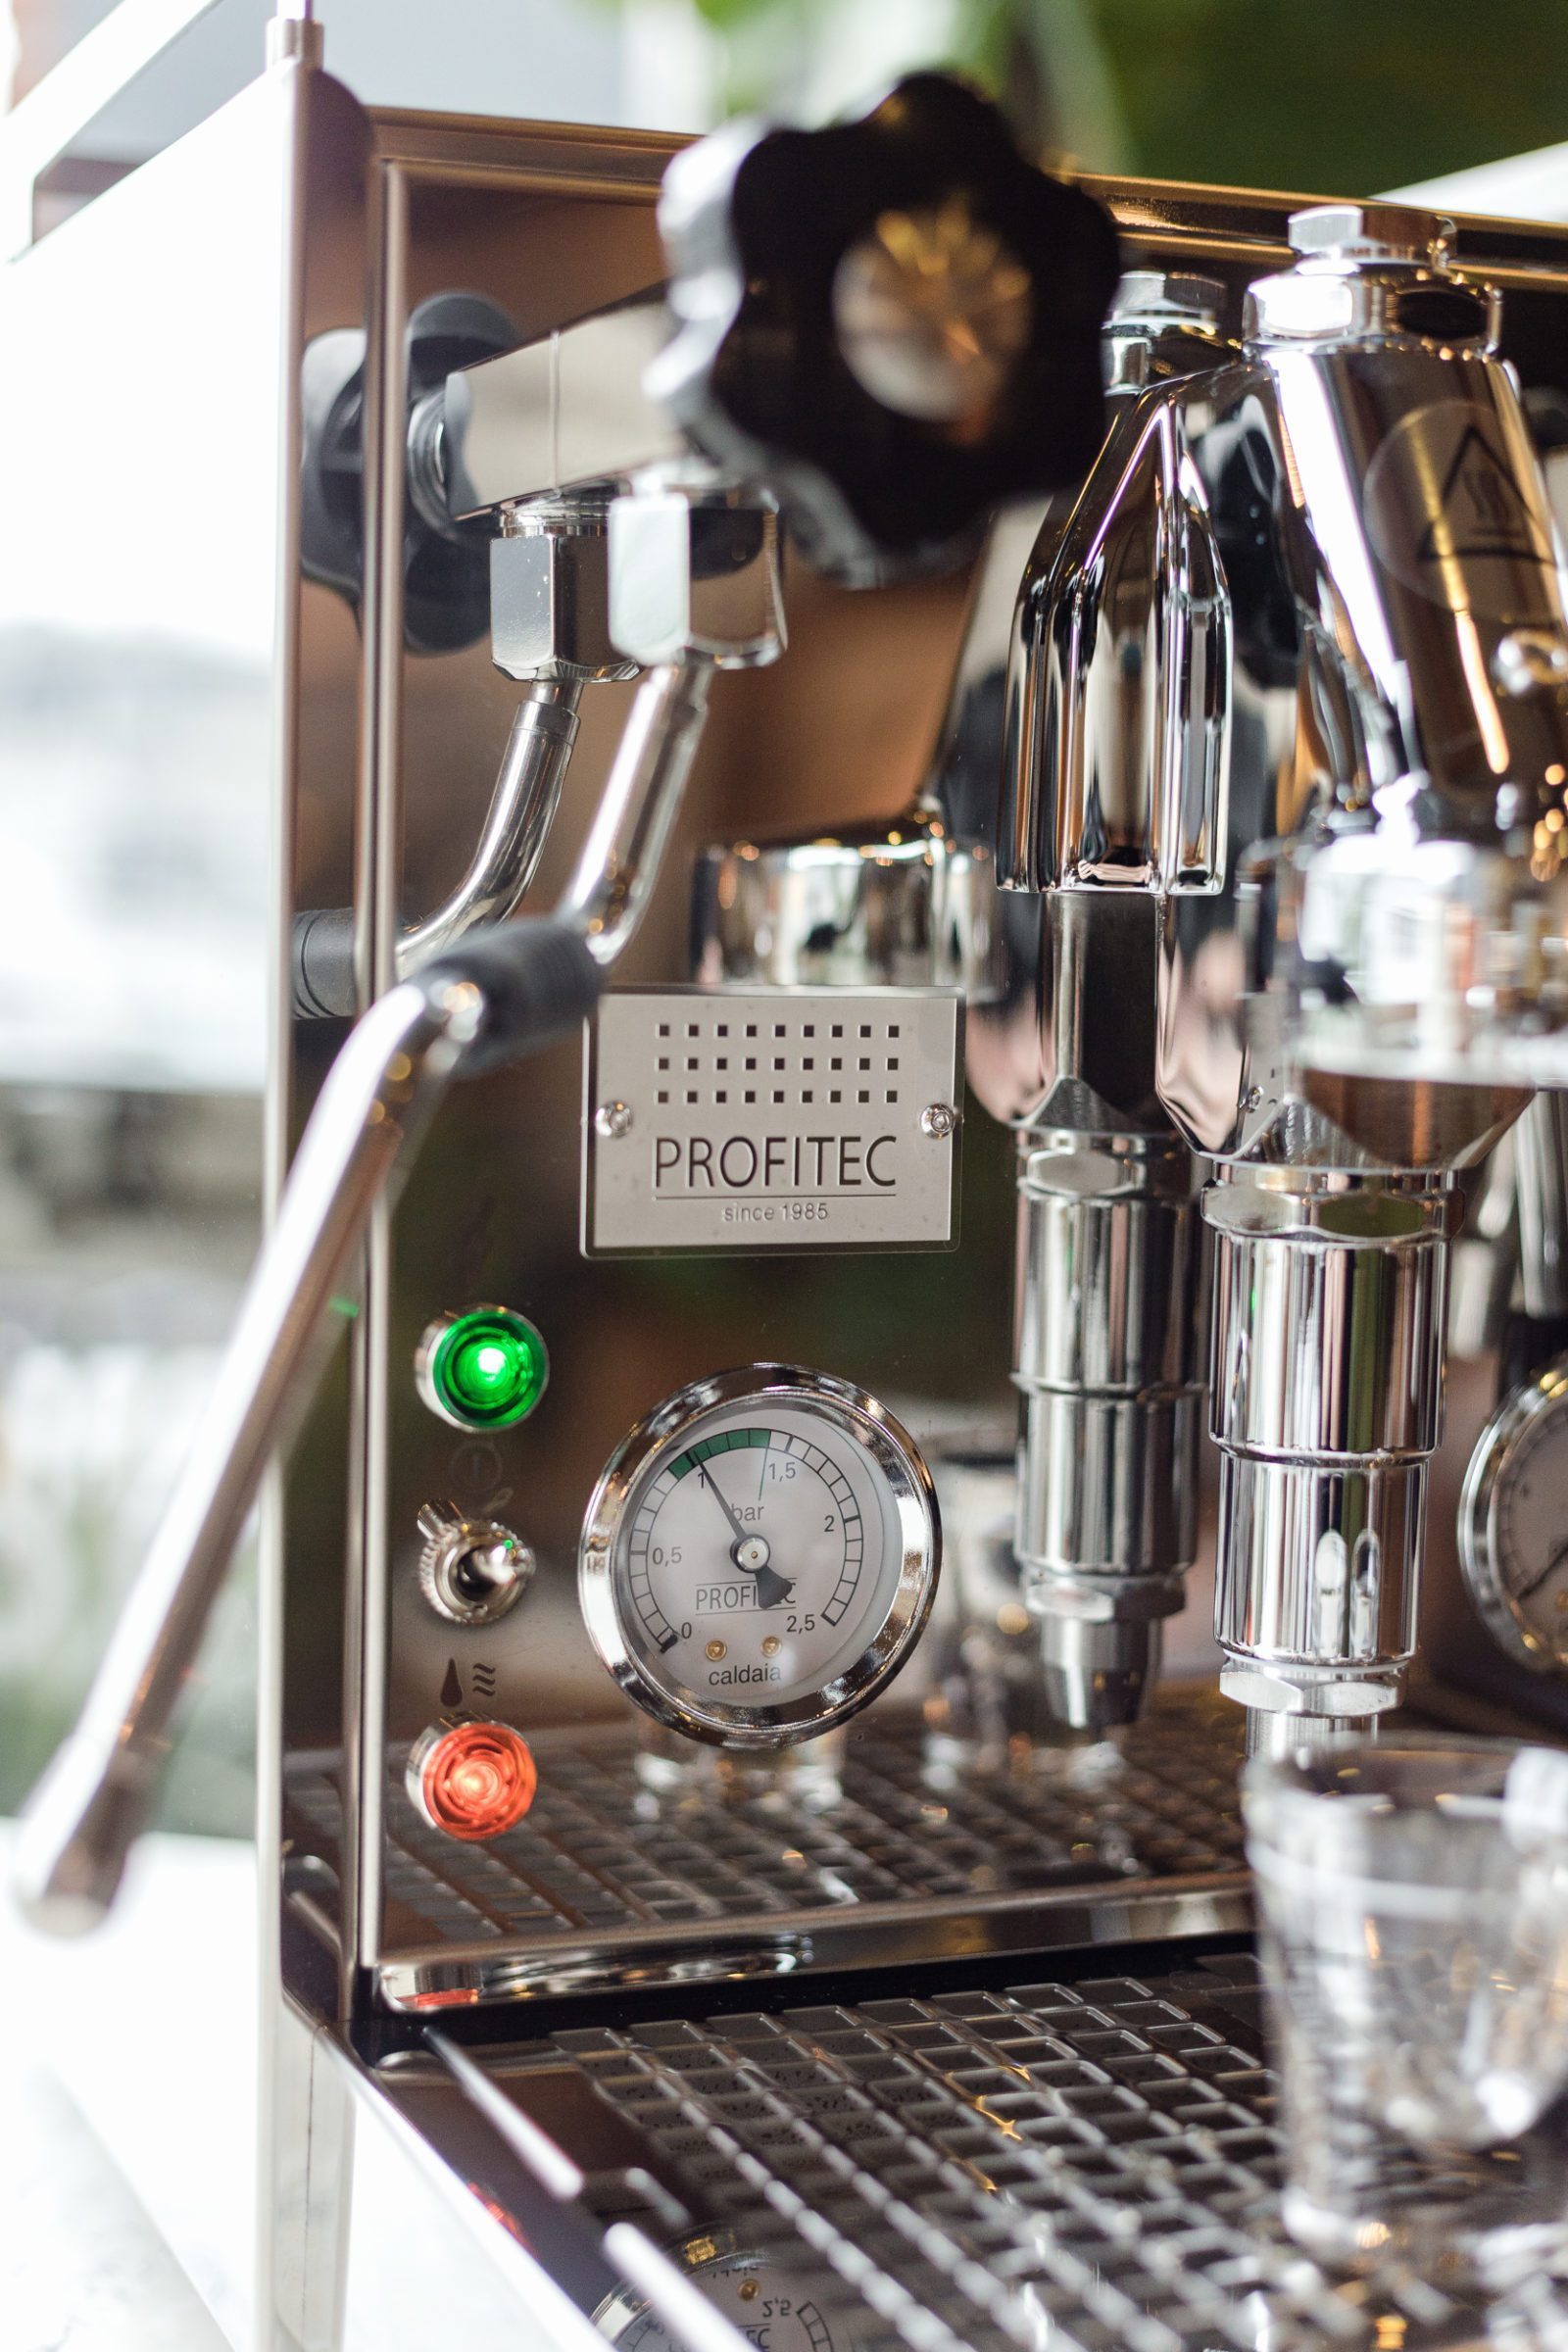 Profitec Espresso Machines